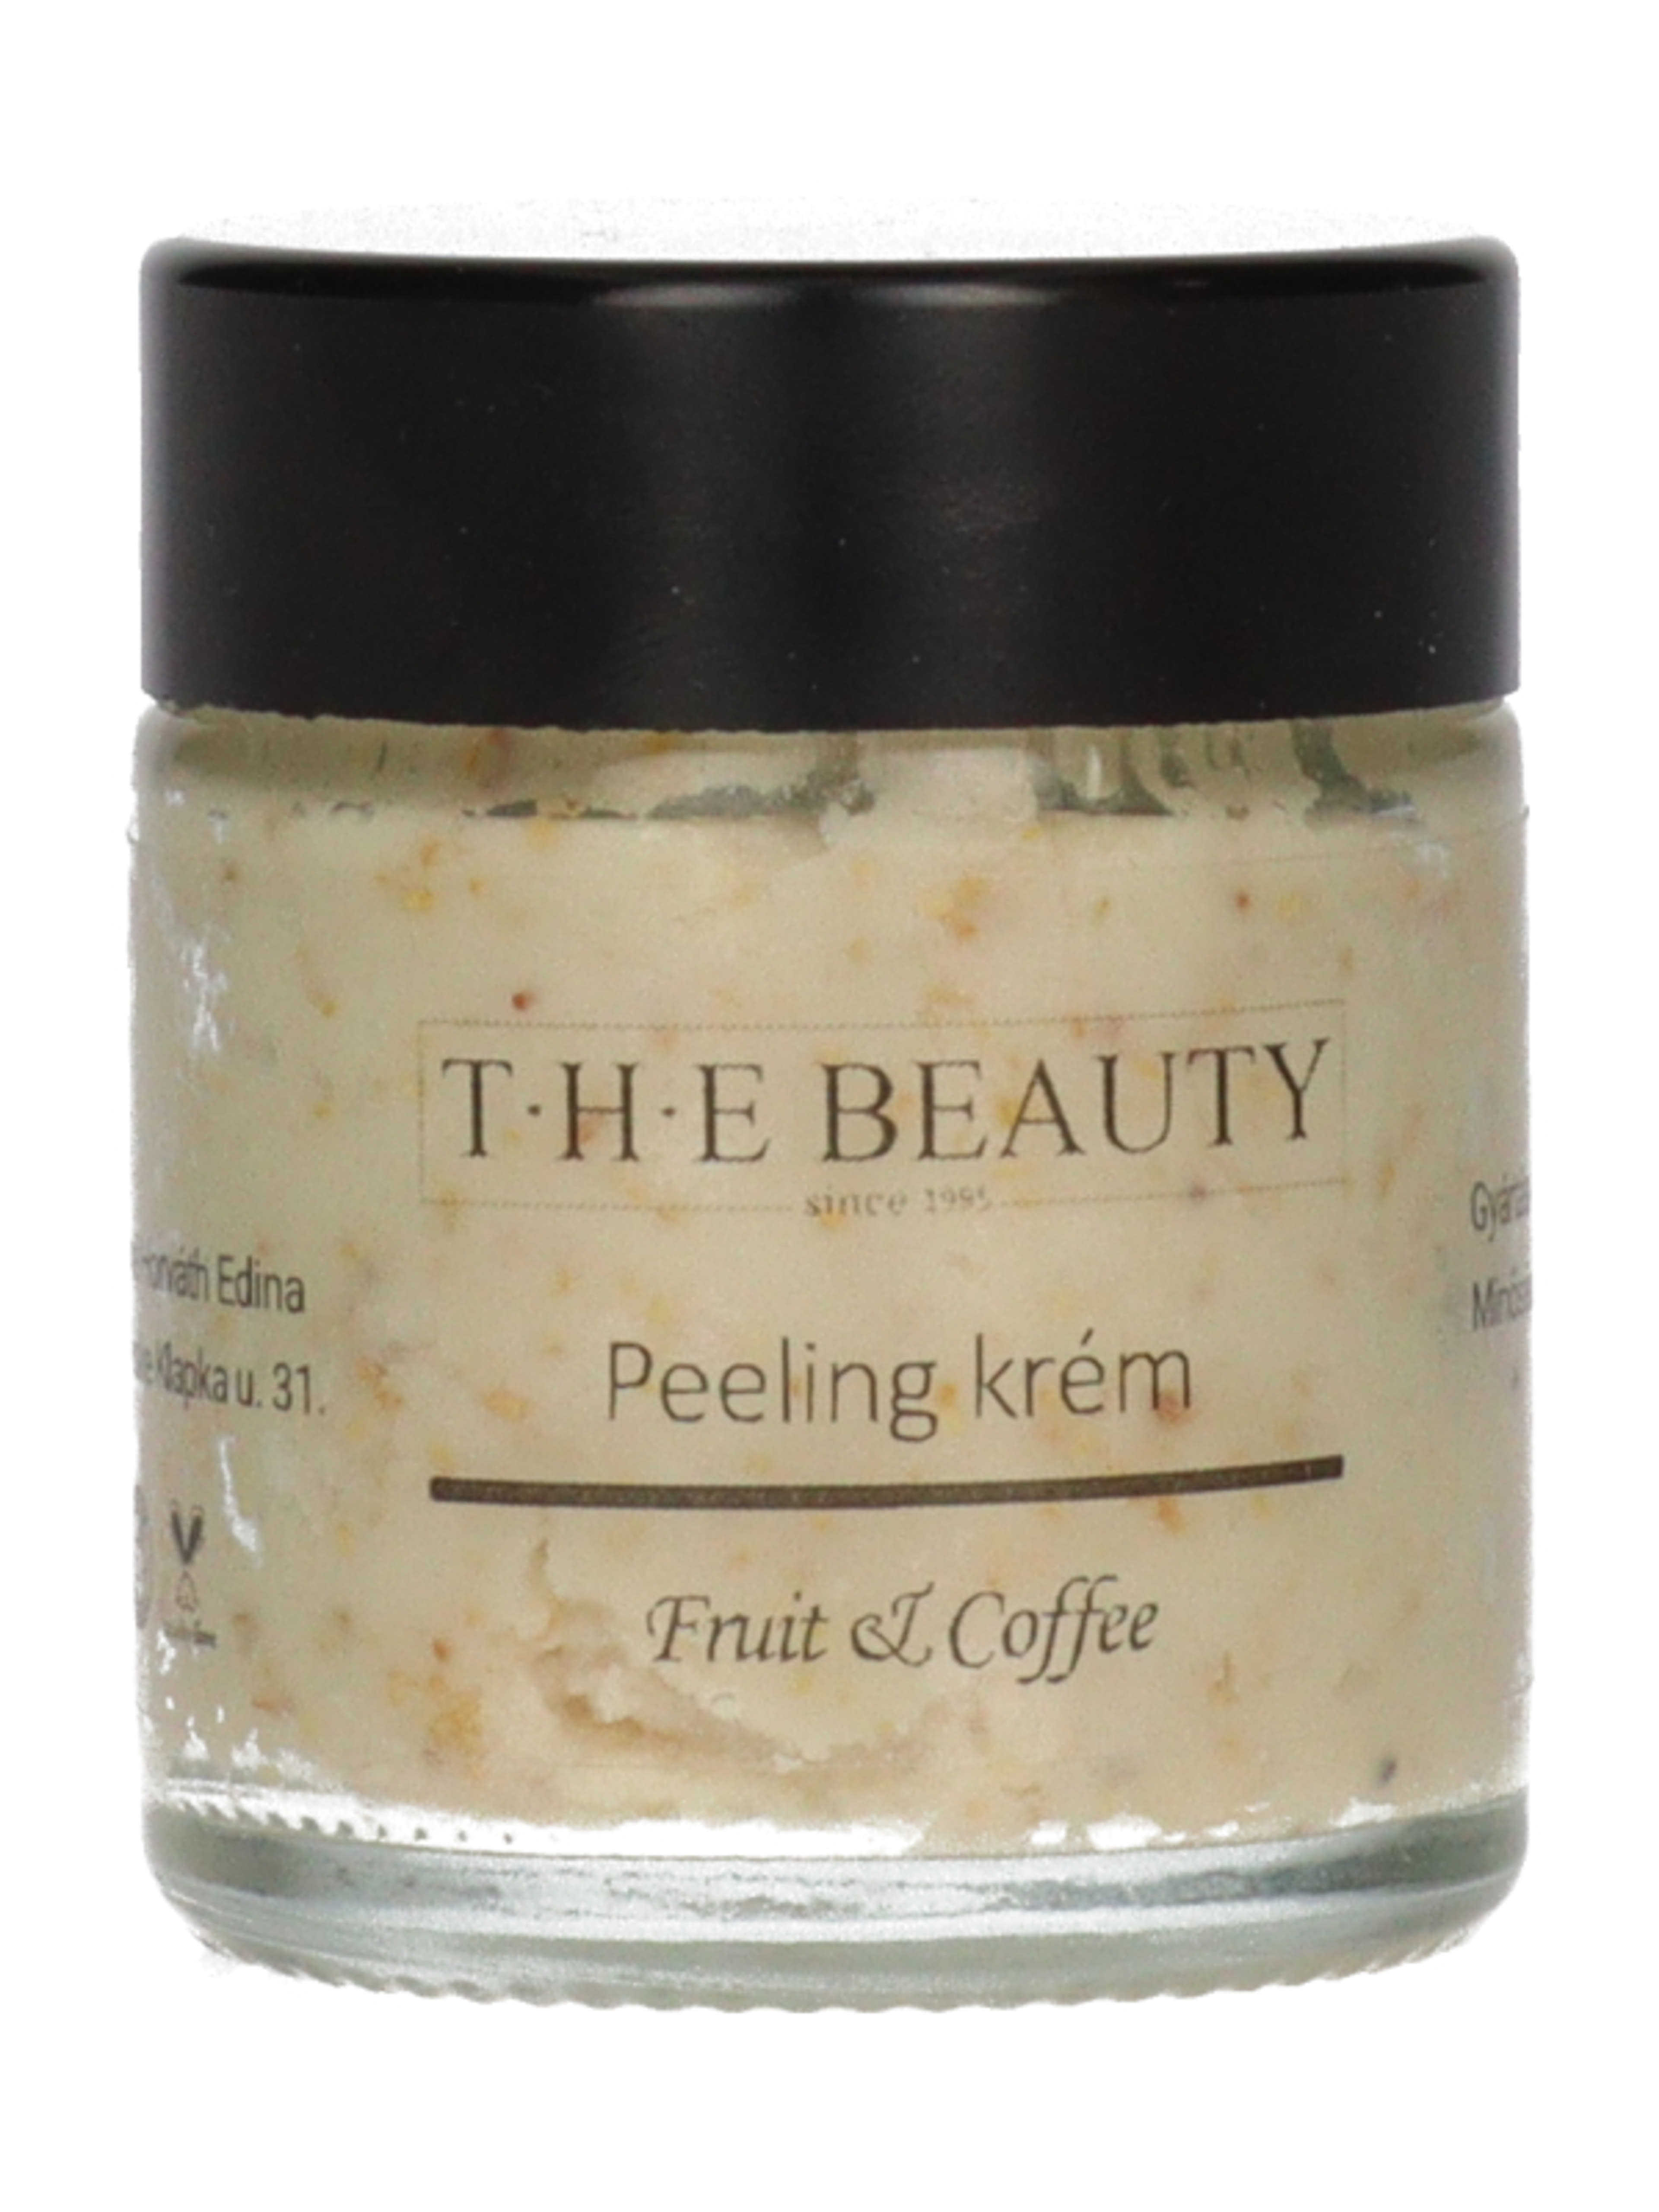 T.H.E Beauty peeling krém fruit&coffee - 30 ml-3